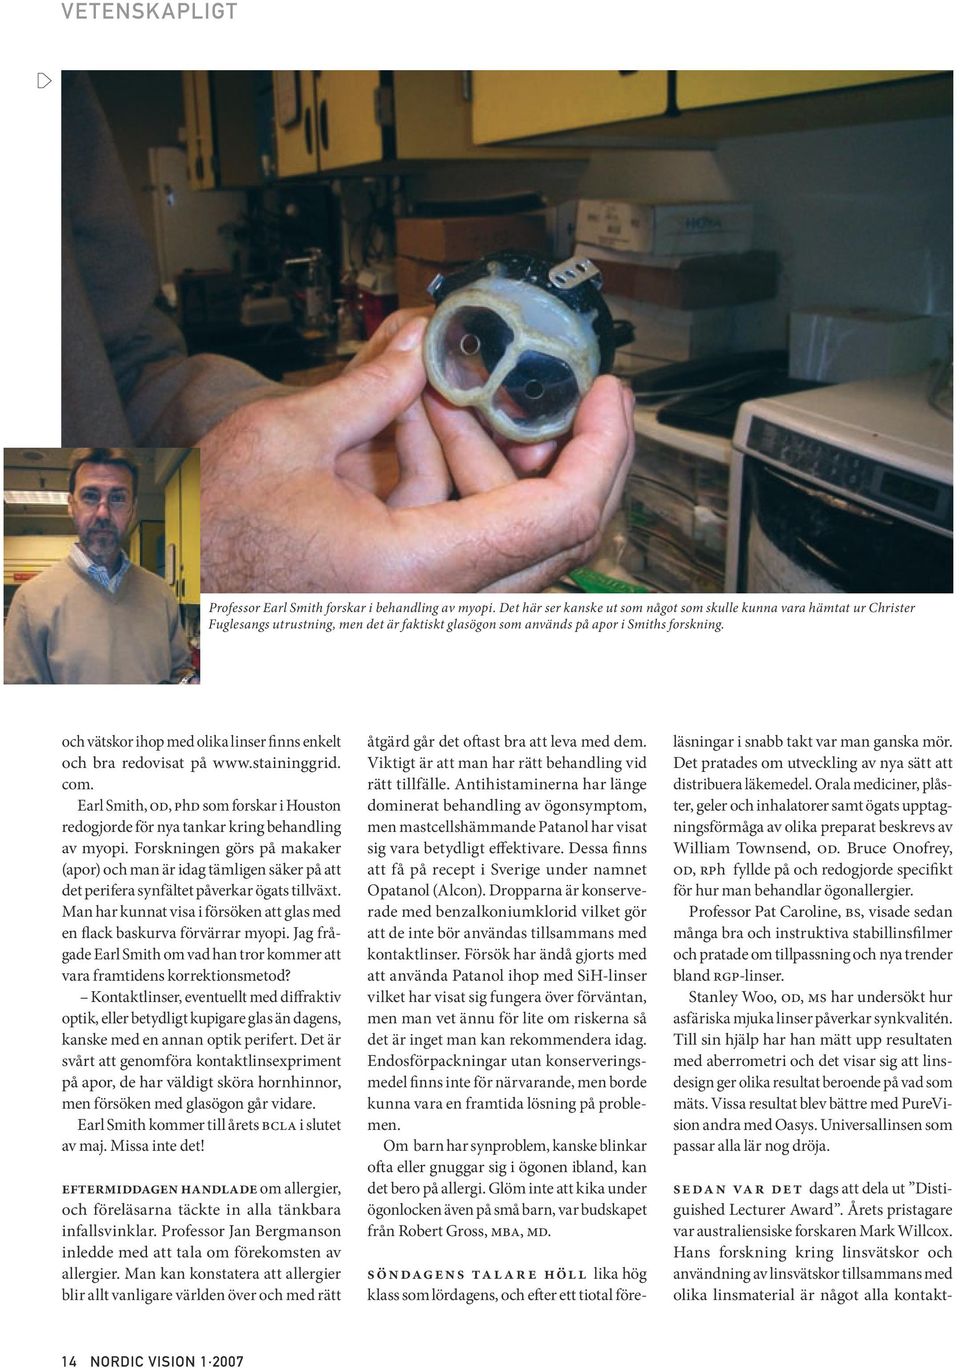 och vätskor ihop med olika linser finns enkelt och bra redovisat på www.staininggrid. com. Earl Smith, OD, PhD som forskar i Houston redogjorde för nya tankar kring behandling av myopi.